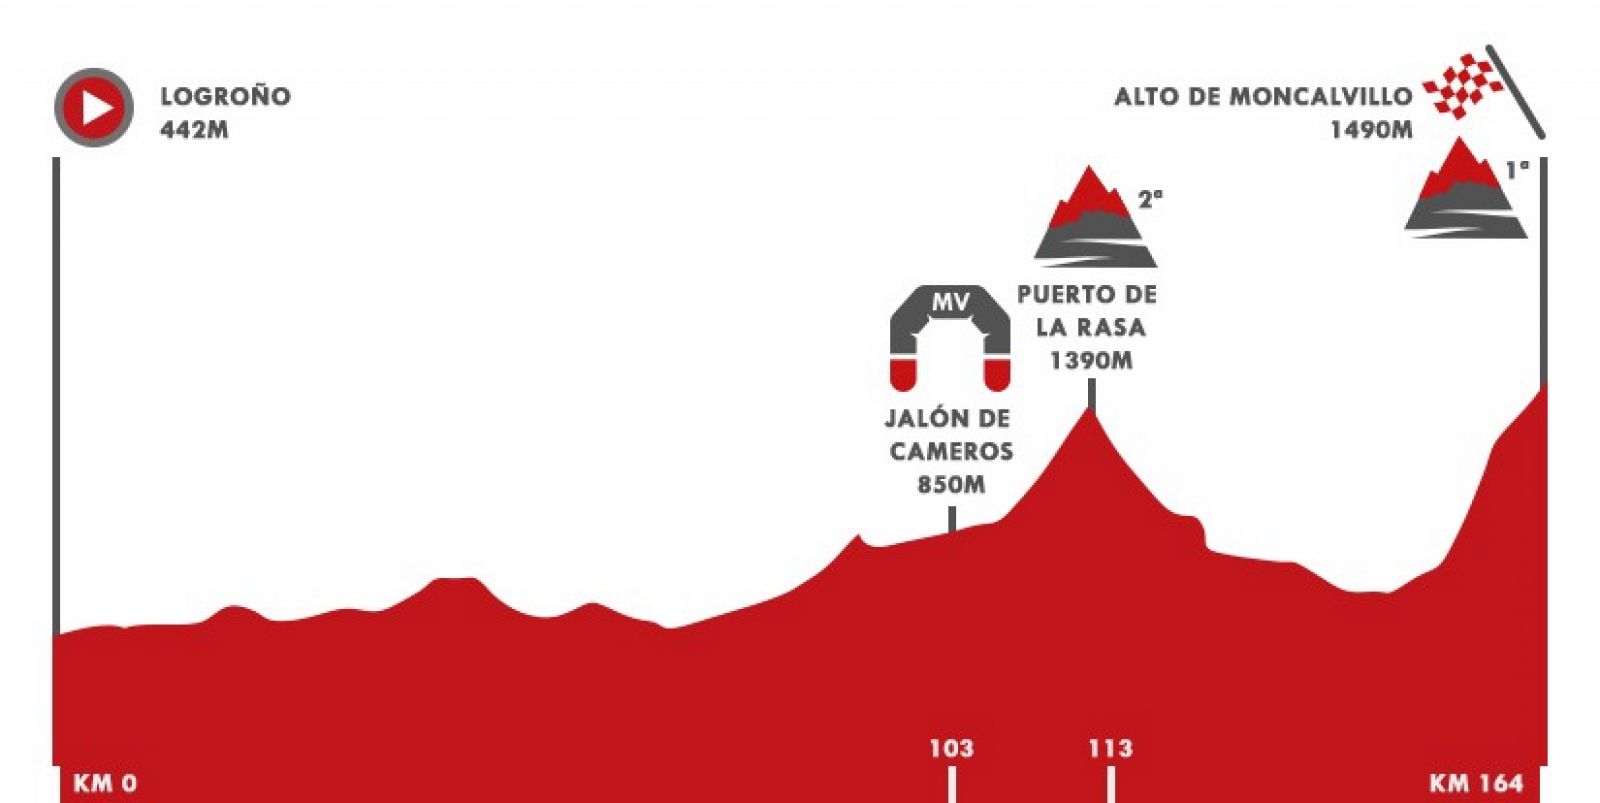 Vuelta 2020 Etapa 8 | Así es el perfil de la etapa 8 entre Logroño y Alto de Moncalvillo